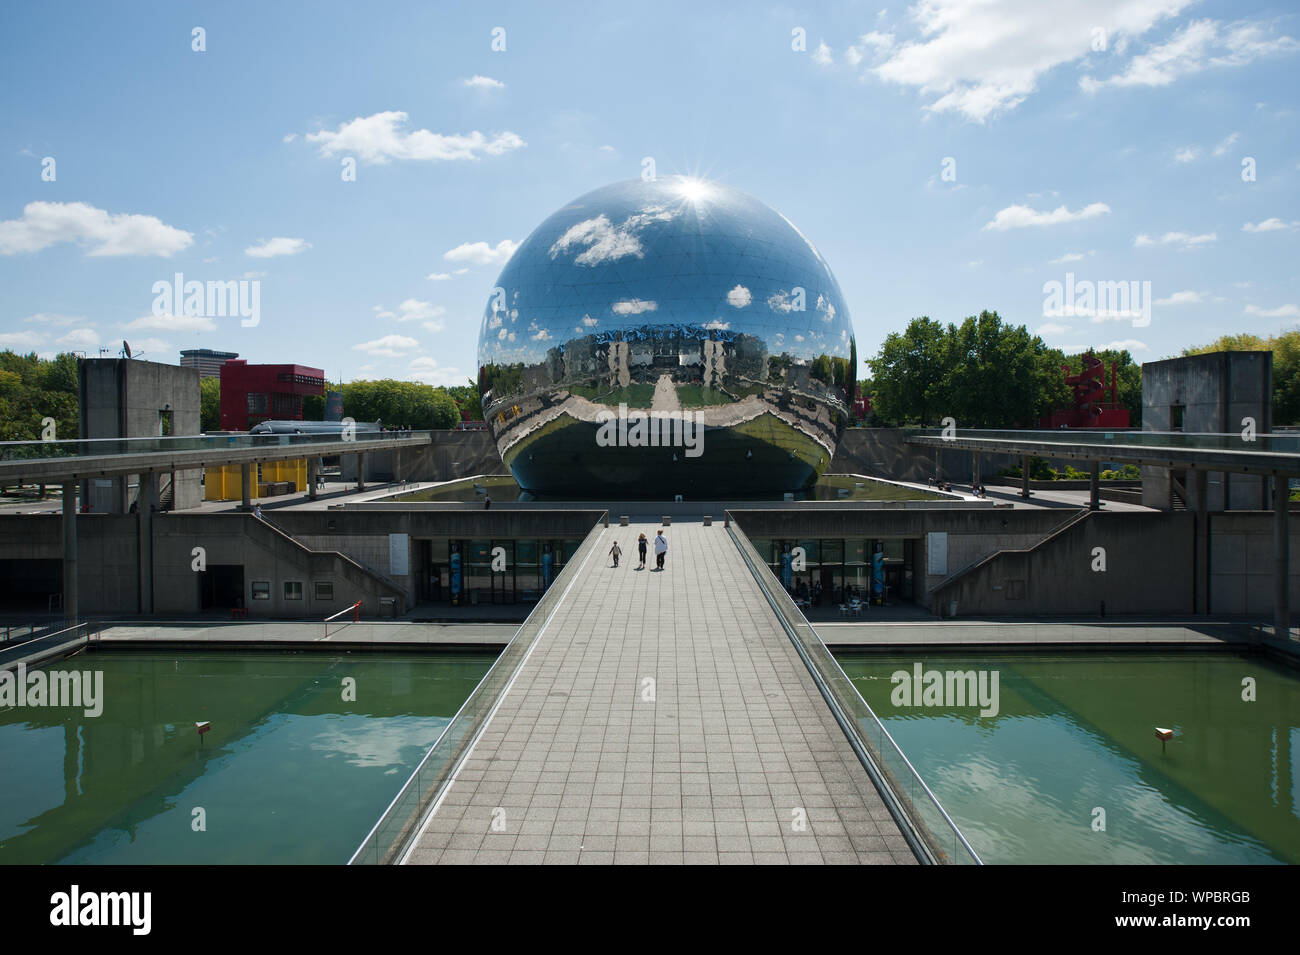 La Géode wurde vom Architekten Adrien Fainsilber und dem Ingenieur Gérard Chamayou entworfen. Die geodätische Kuppel hat einen Durchmesser von 36 Mete Stock Photo